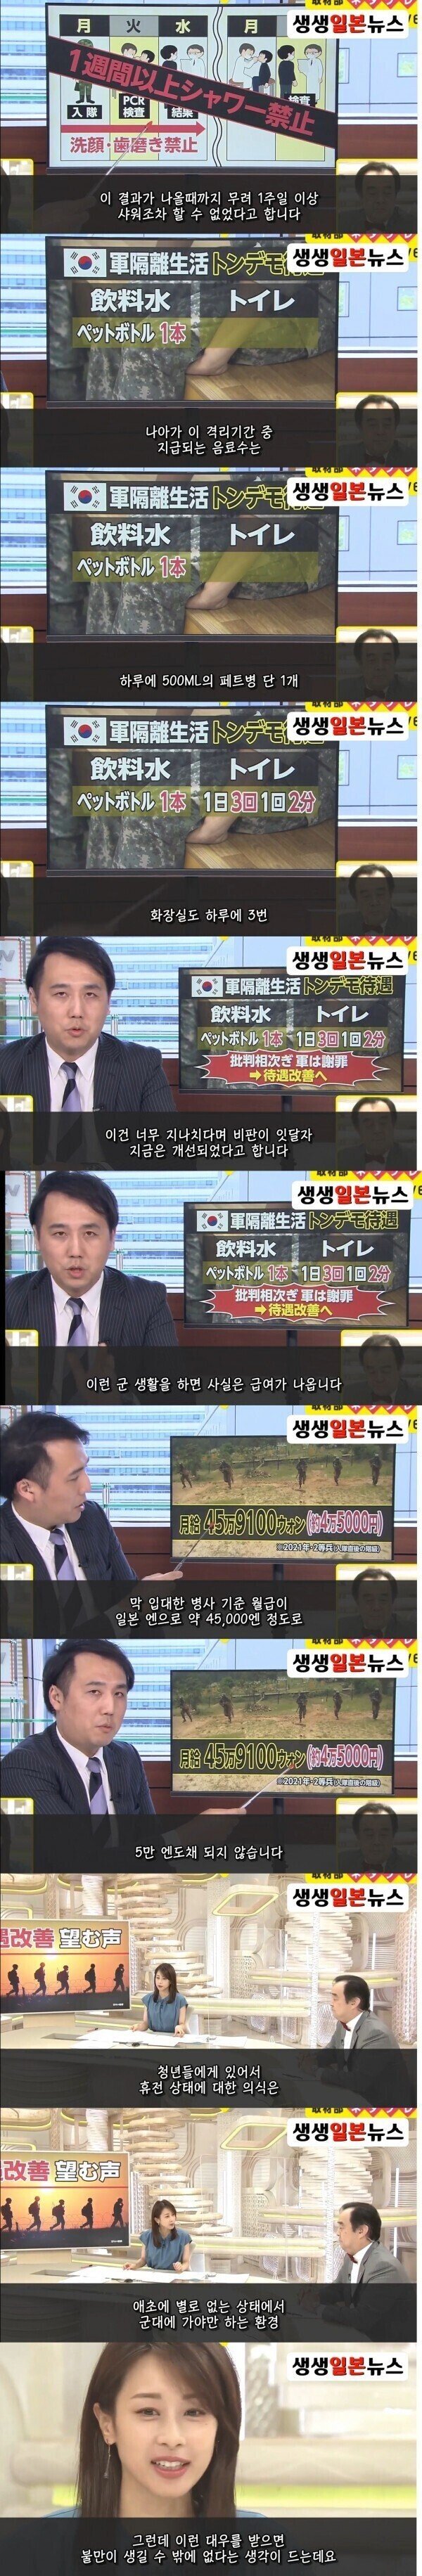 한국군의 단점을 지적하는 일본 방송